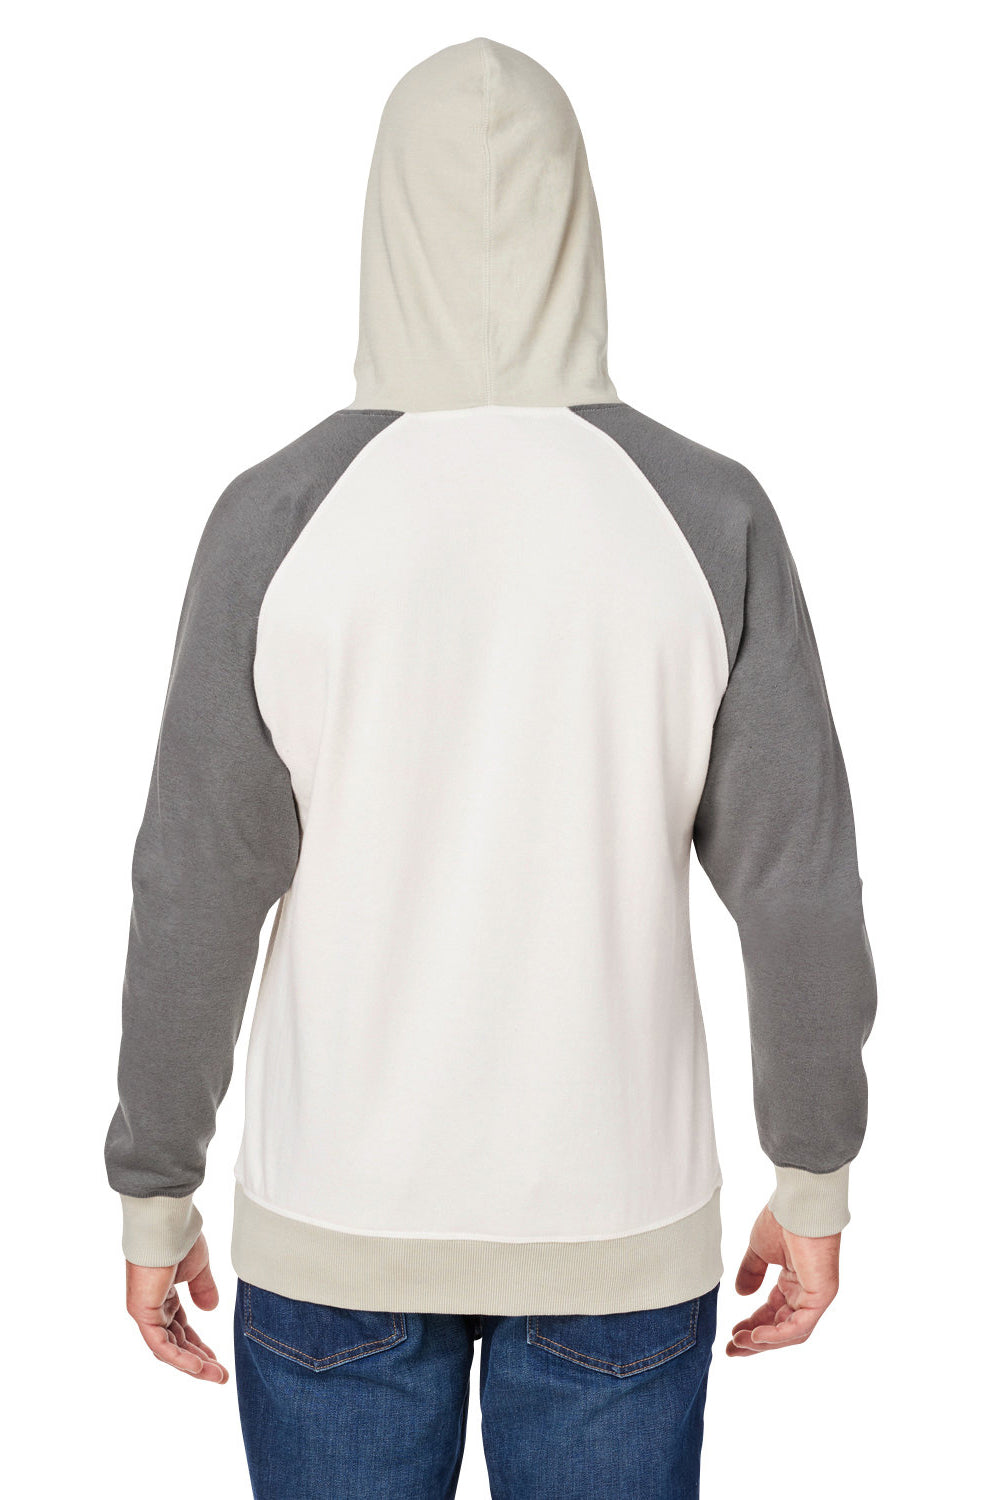 J America 8886JA Mens Vintage Hooded Sweatshirt Hoodie Antique White/Smoke Grey Back